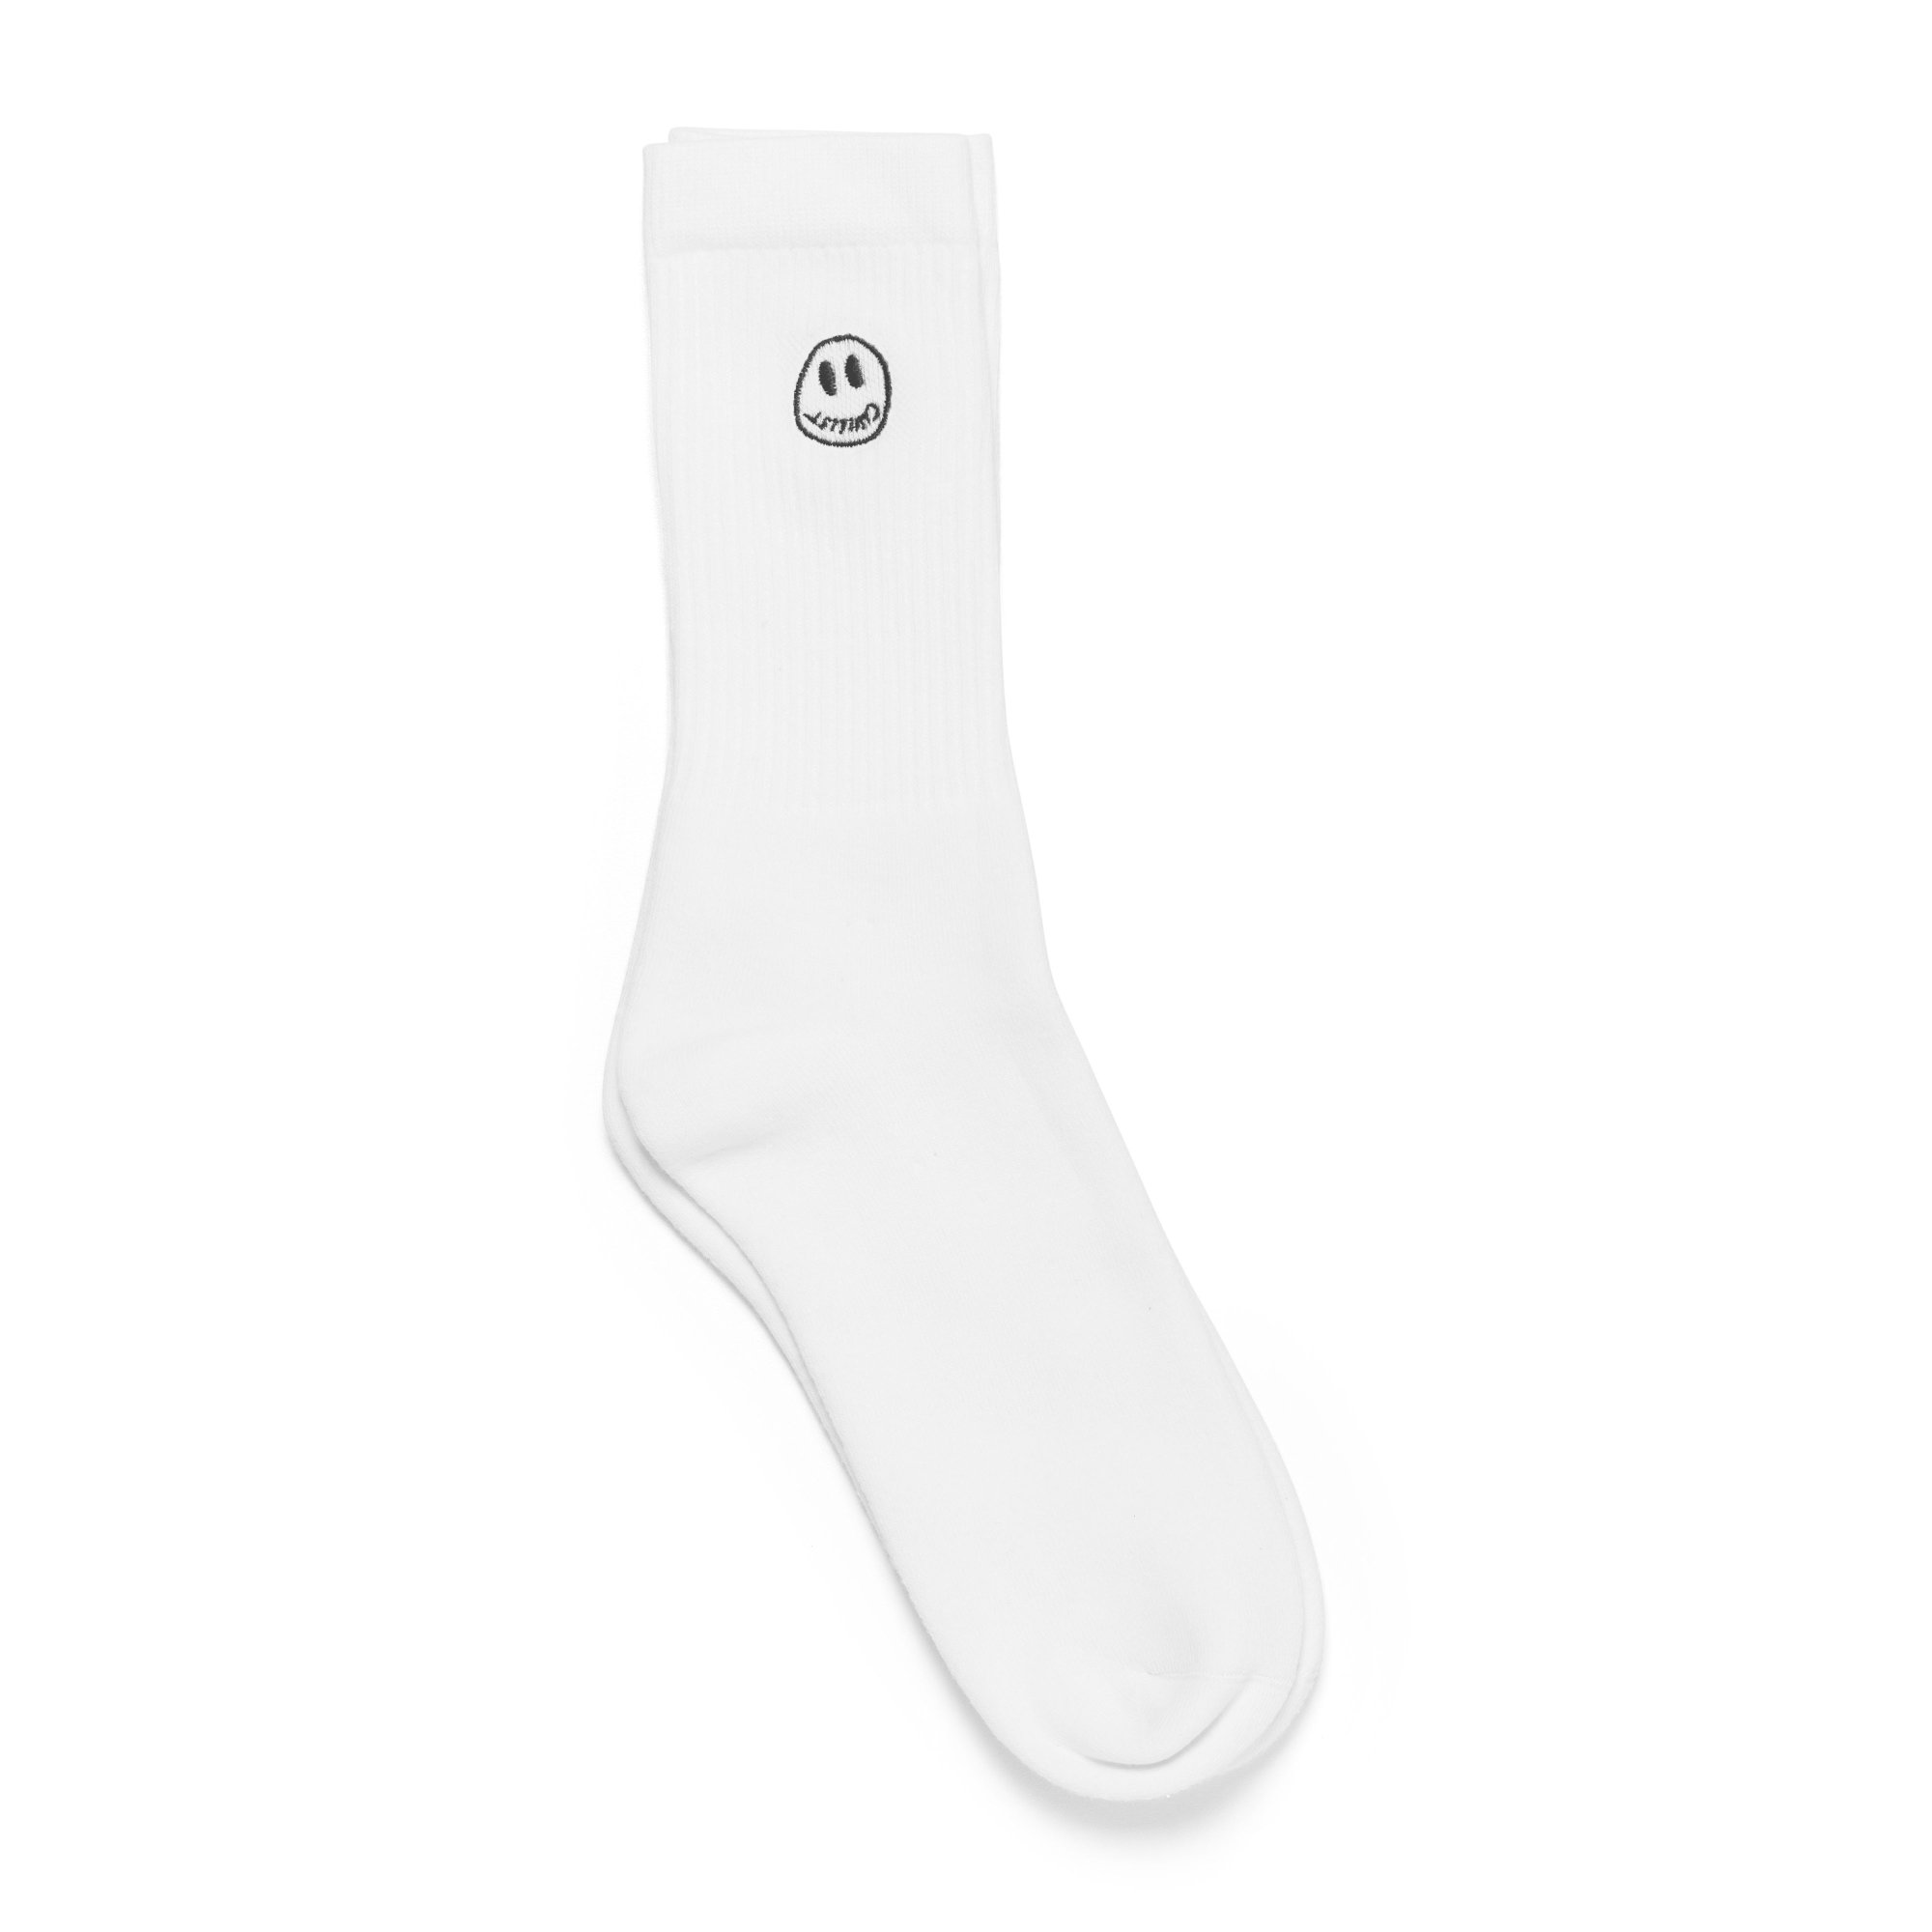 CIVILIST<br>Momo Smiler Socks<br>